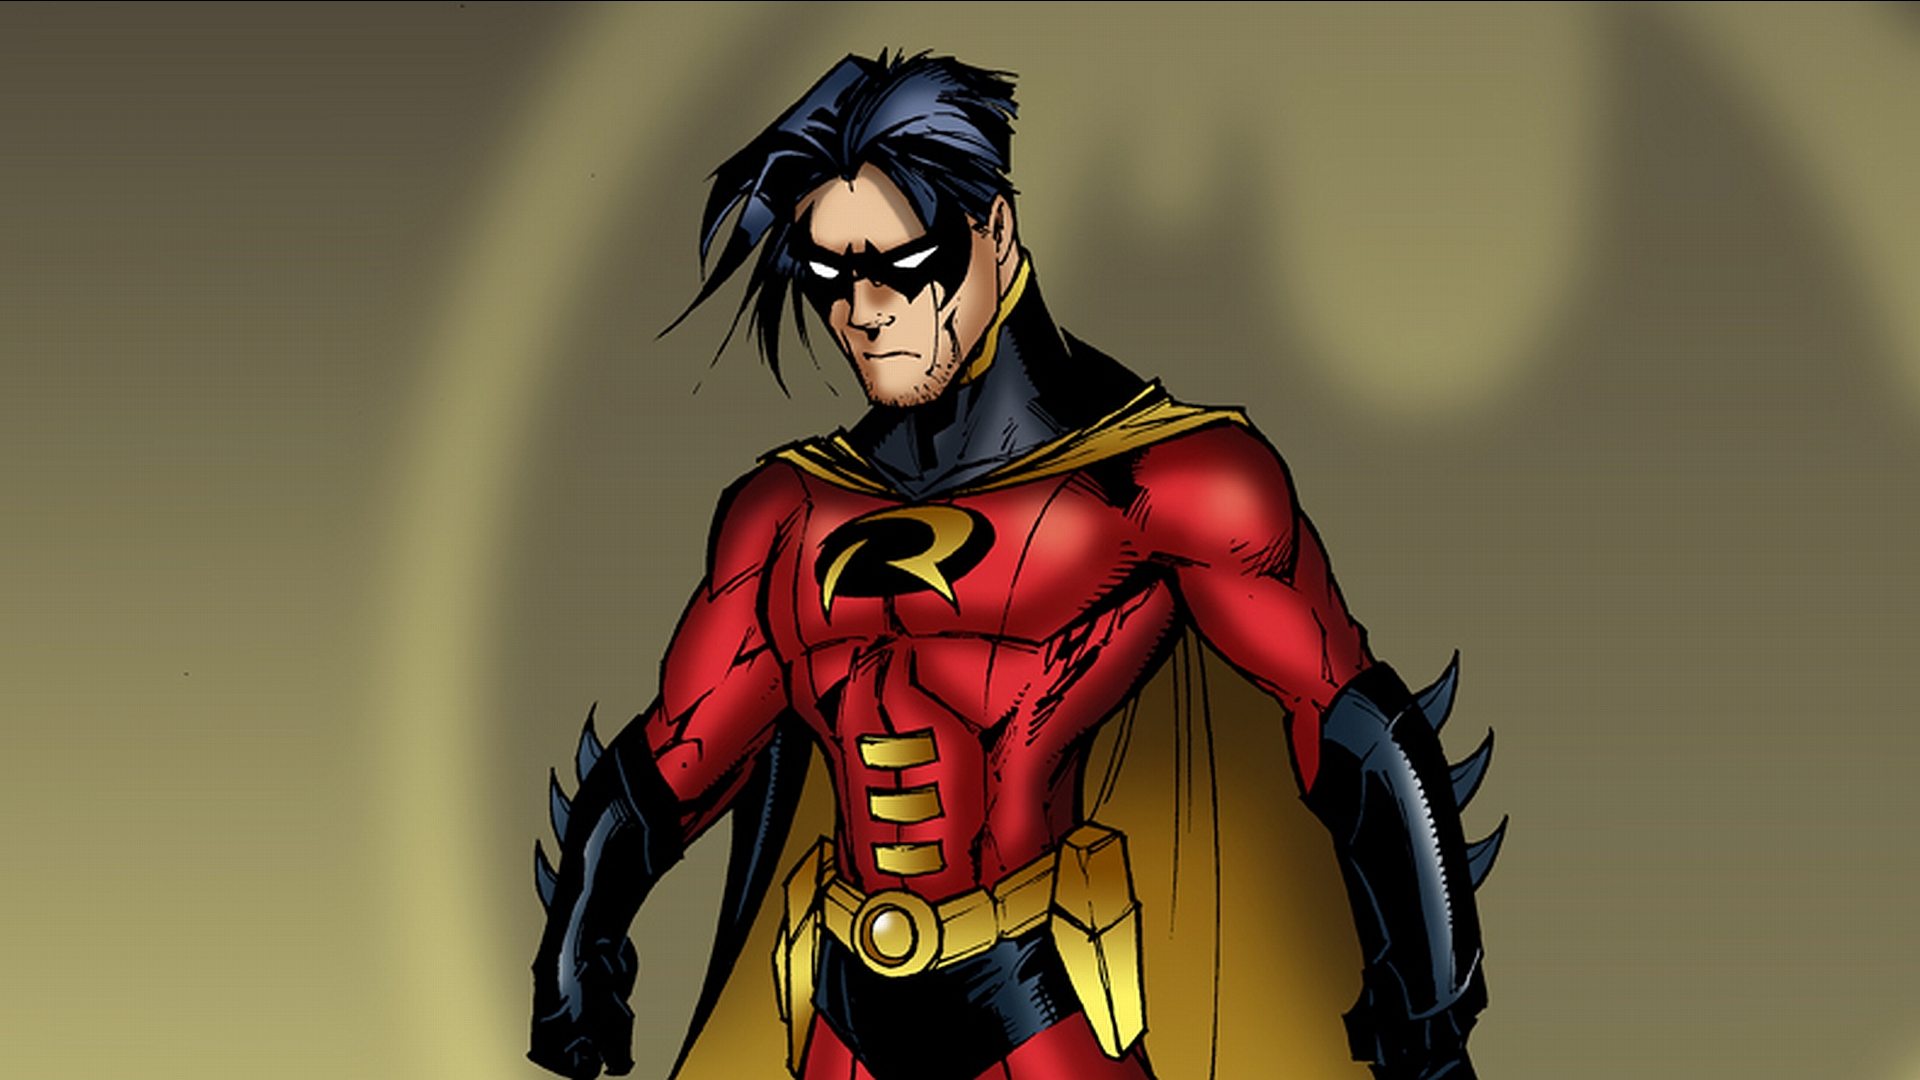 fond d'écran batman et robin,personnage fictif,super héros,ligue de justice,héros,oeuvre de cg